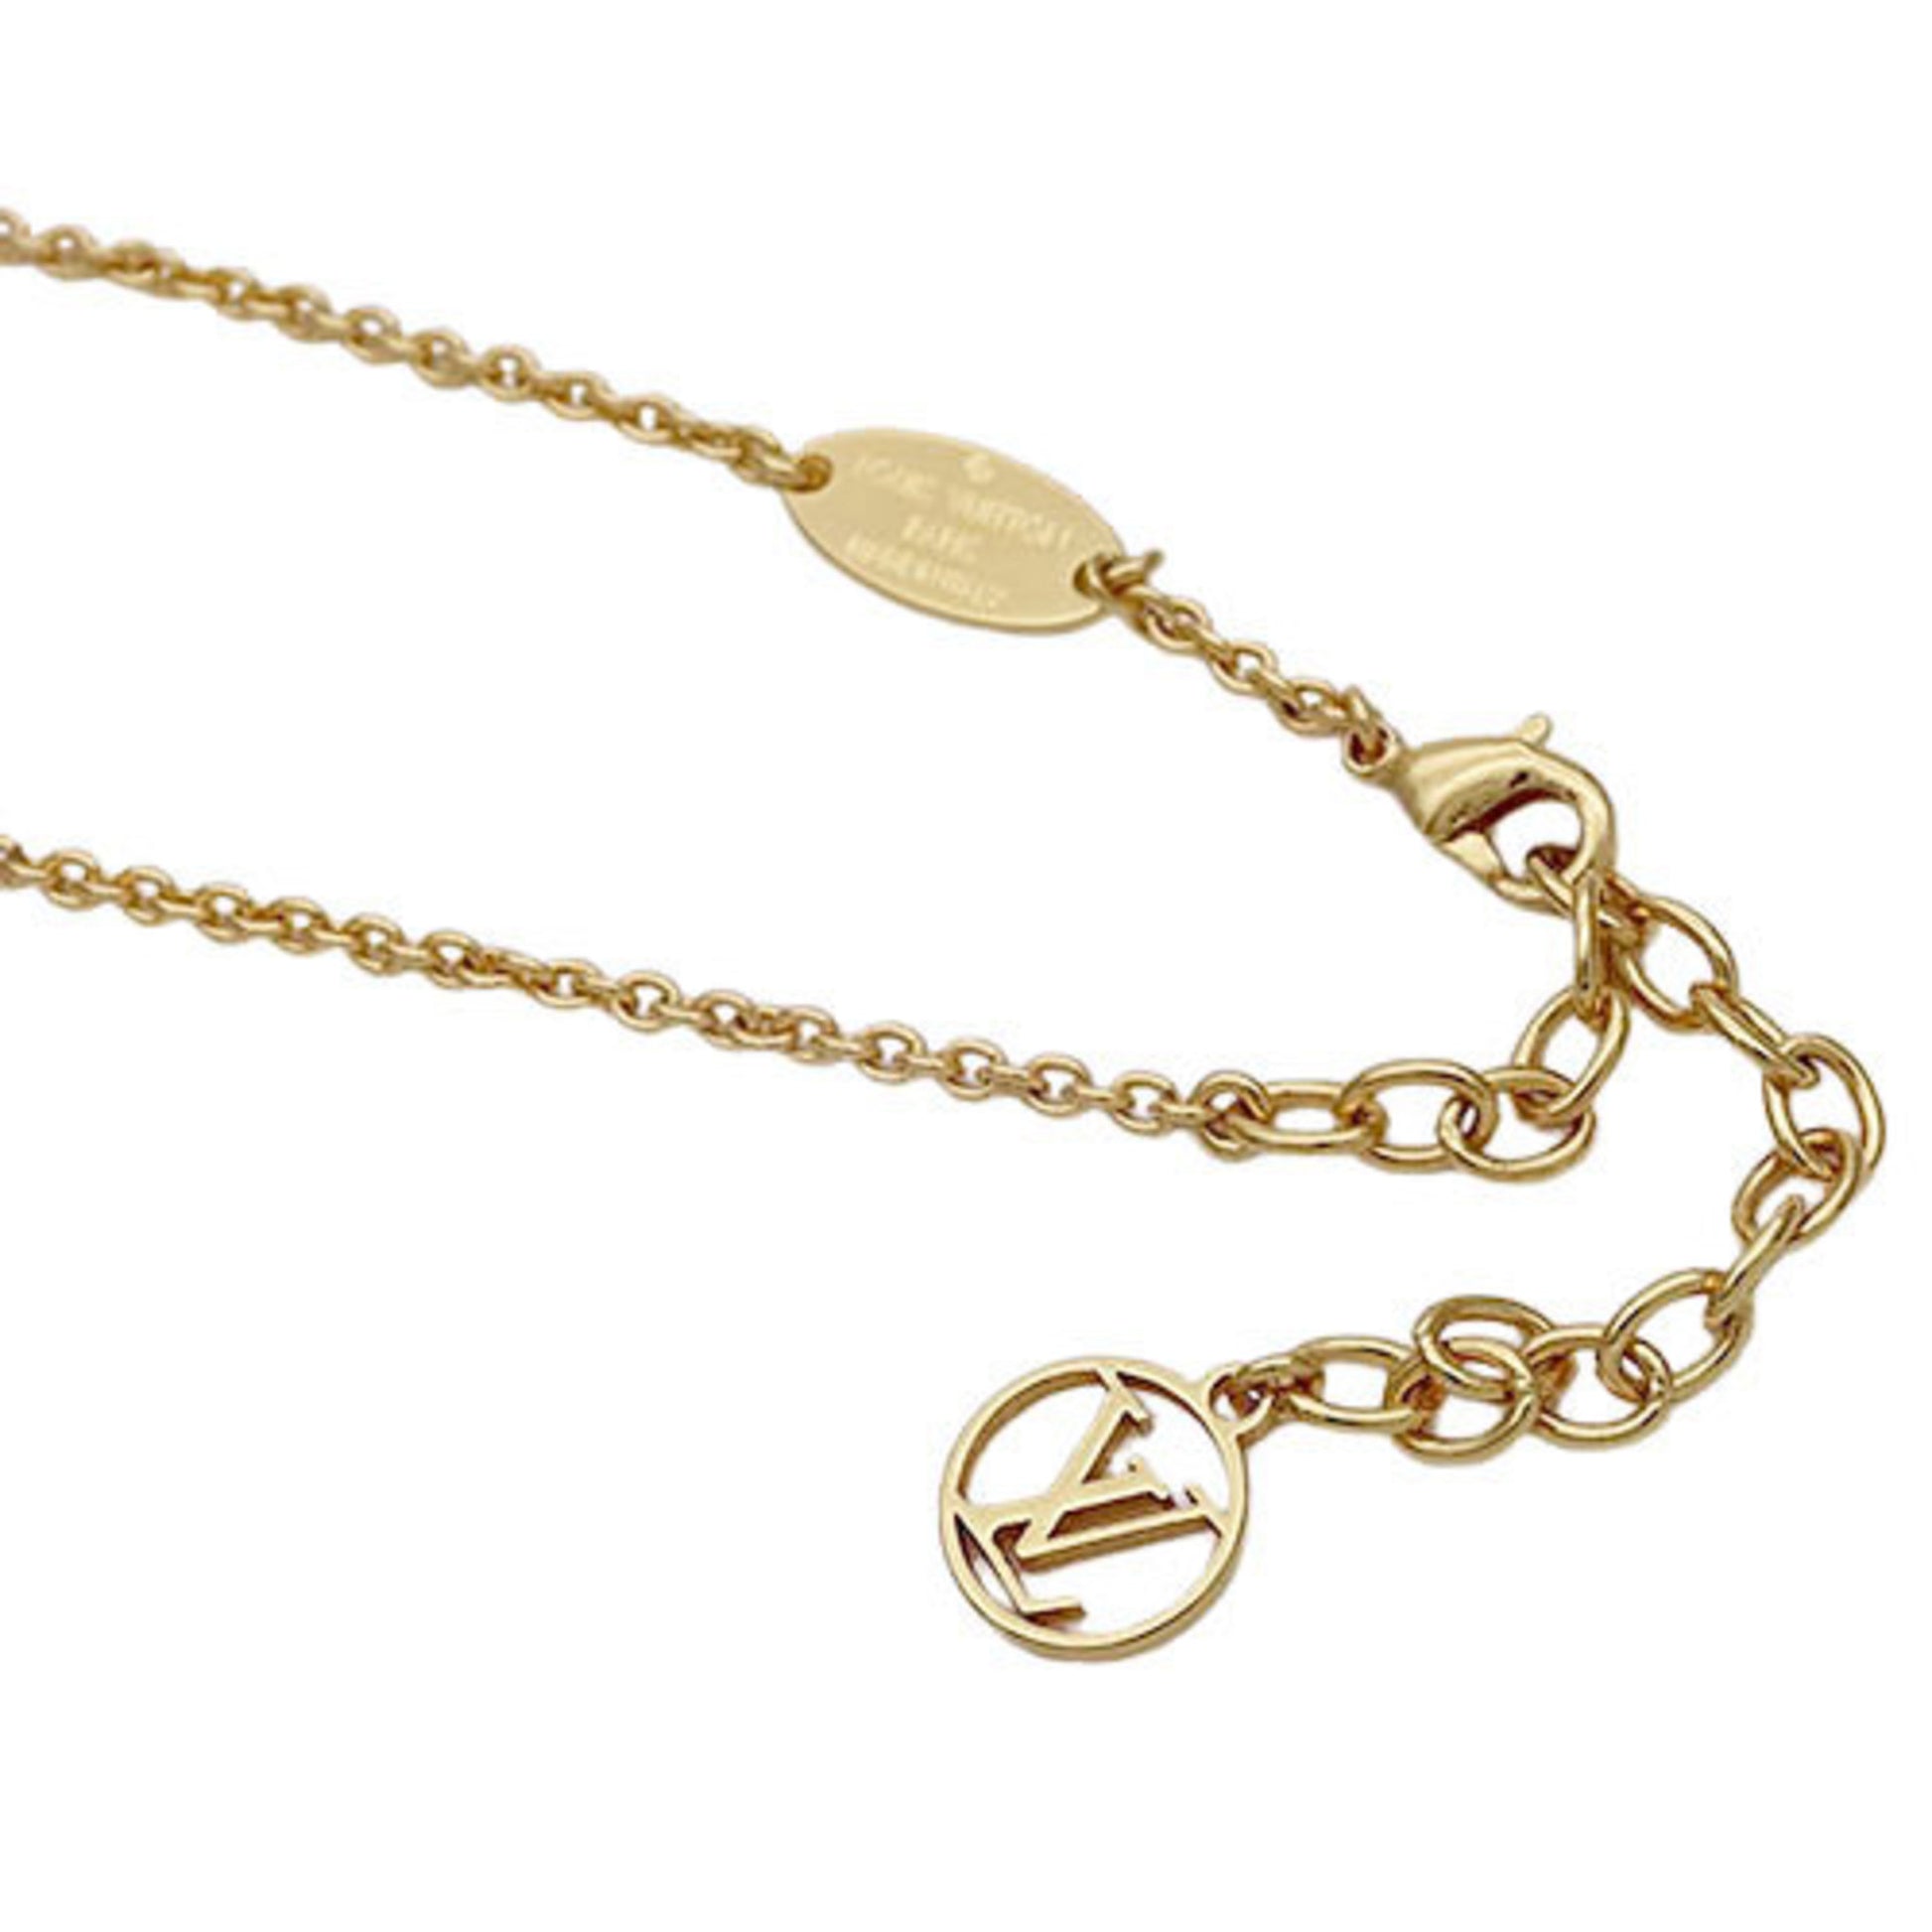 Shop Louis Vuitton Lv iconic necklace (M00596) by Leeway